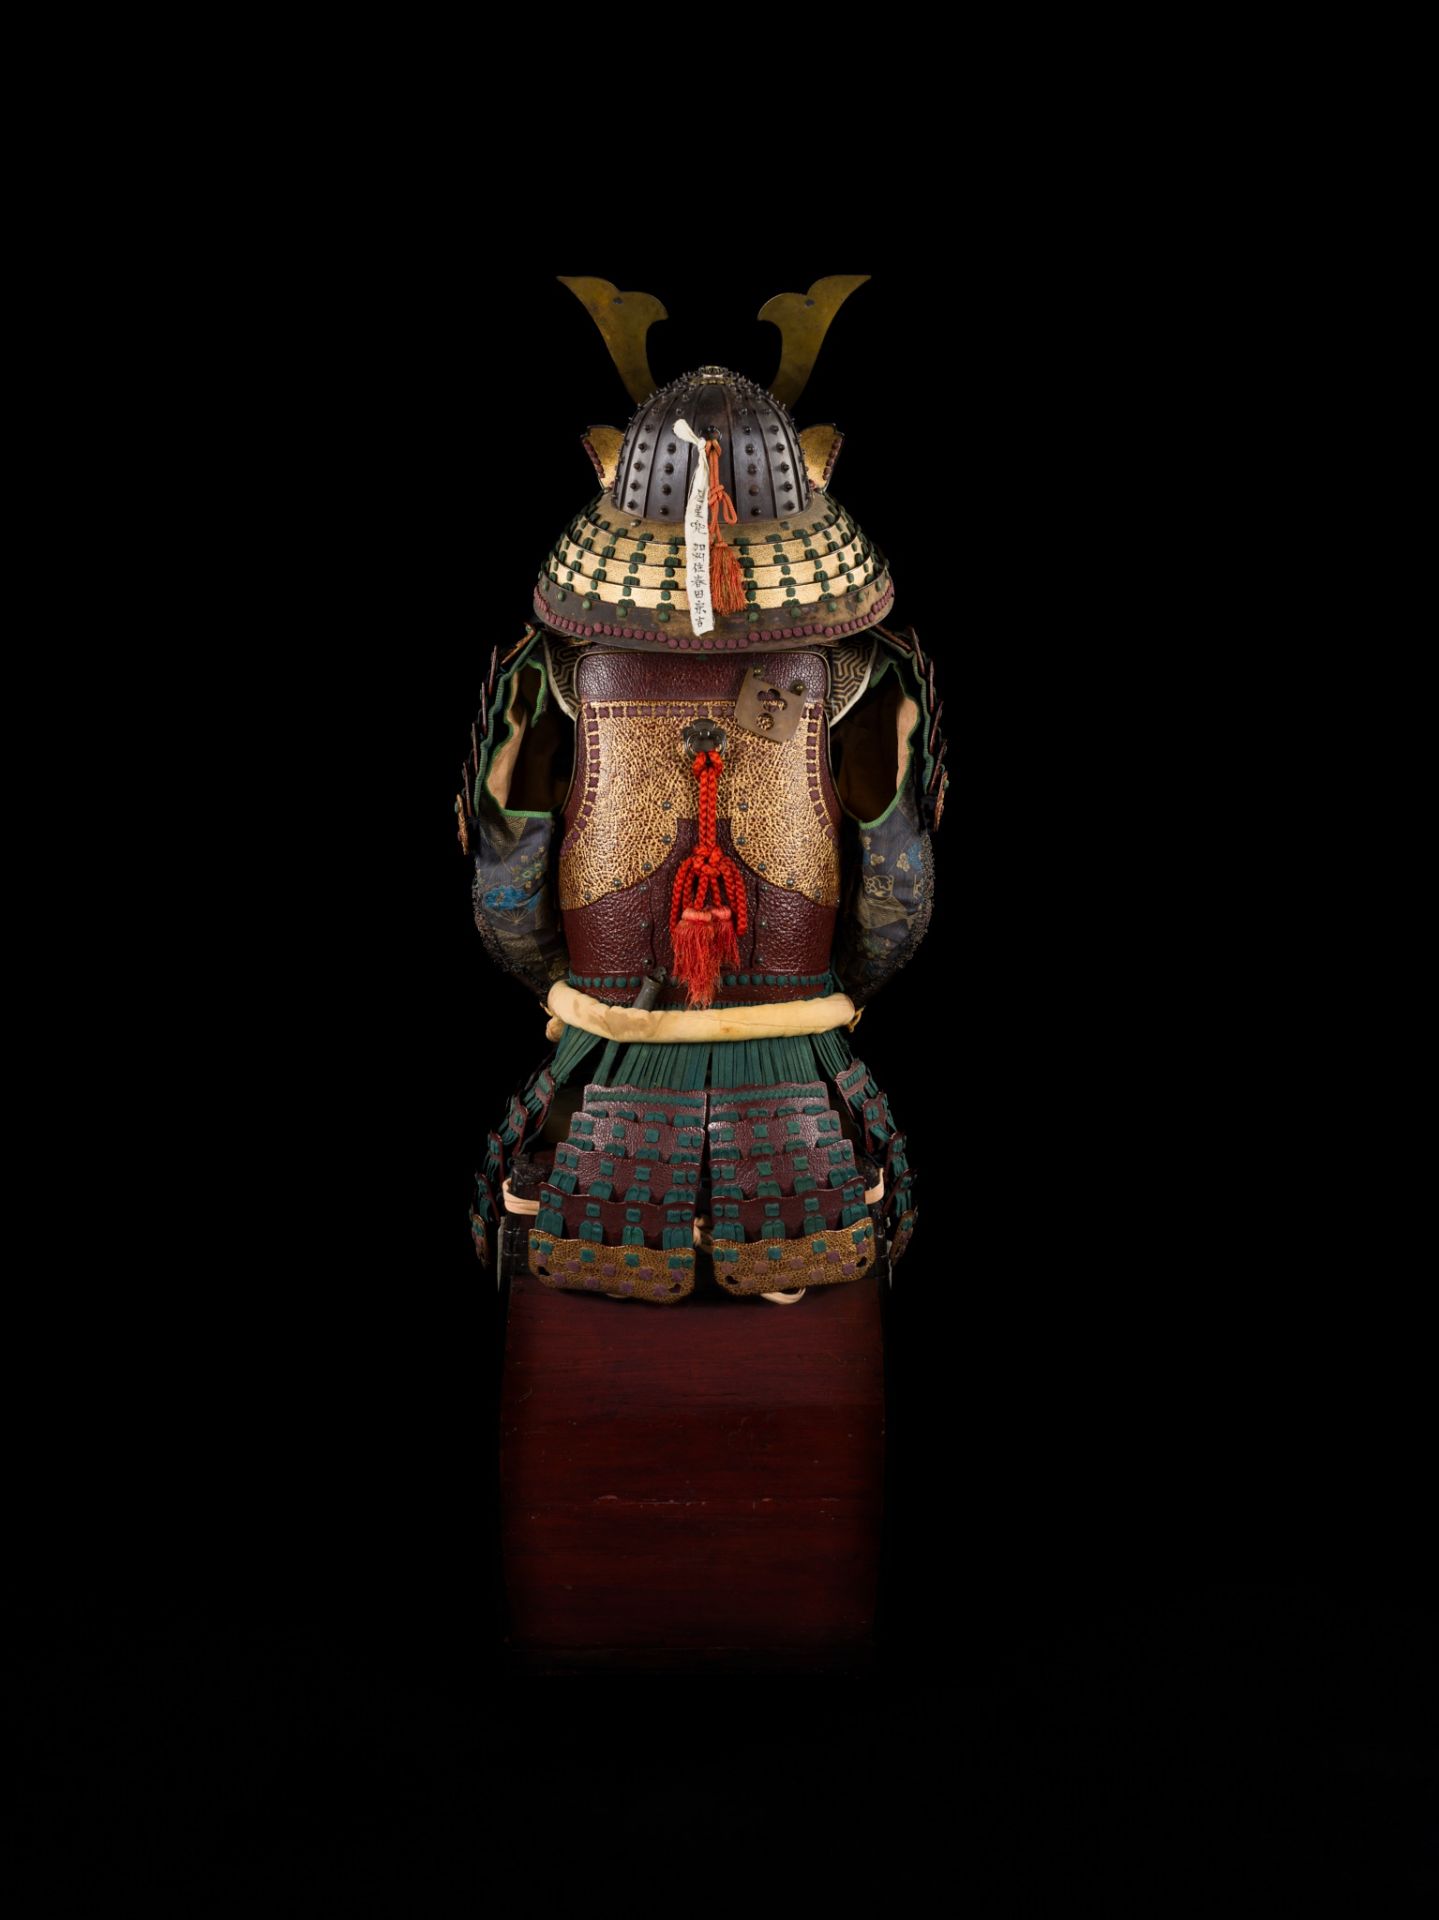 A KAGA STYLE SUIT OF ARMOR WITH A HOSHIBACHI KABUTO BY HARUTA MUNEYOSHI - Bild 3 aus 13